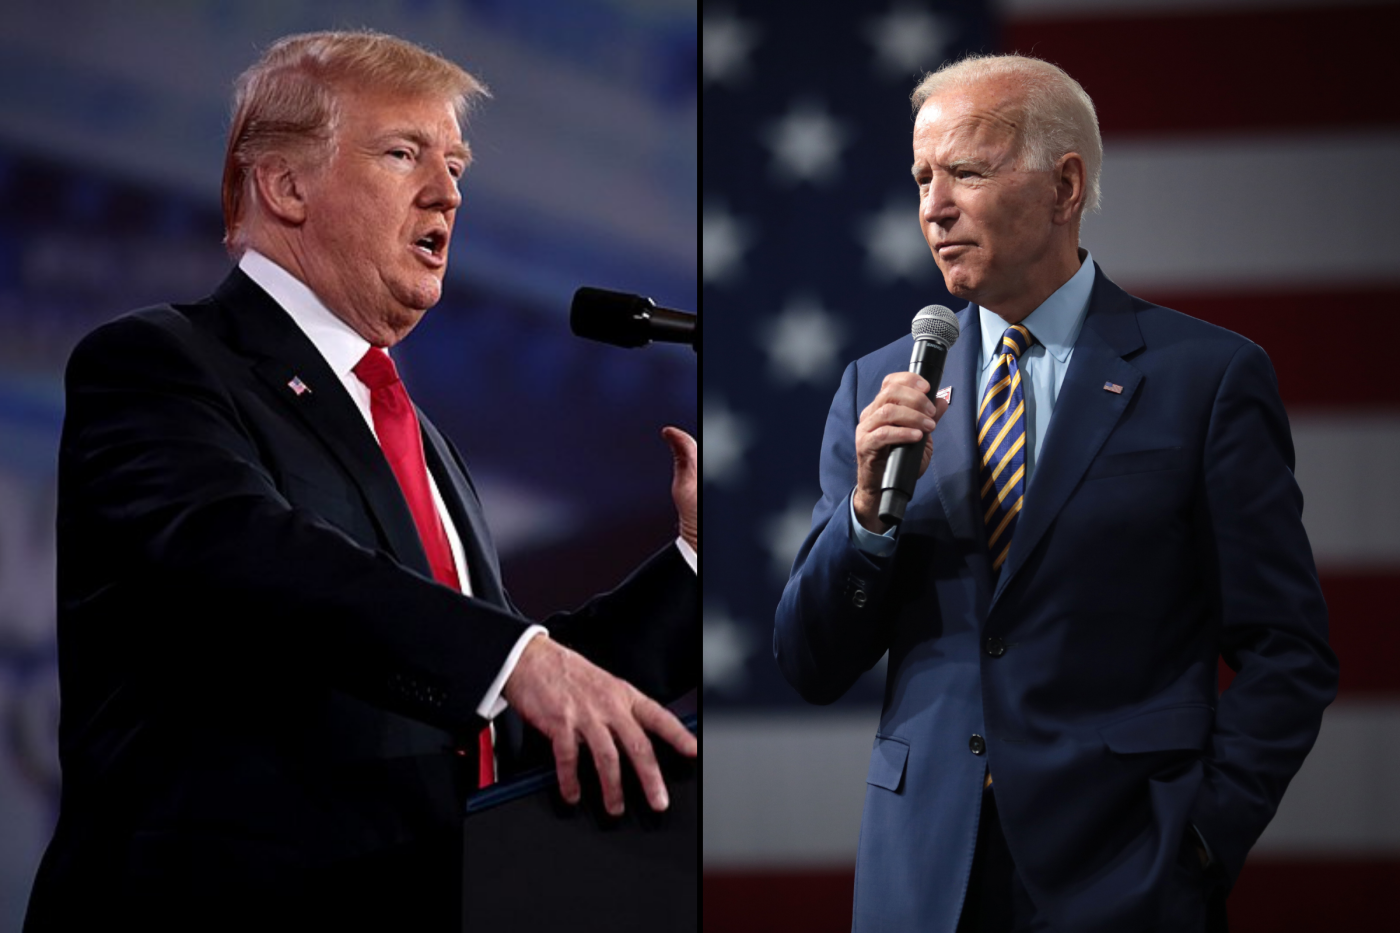 Montage de deux images séparées. À droite, Donald Trump donnant un discours, et à gauche Joe Biden donnant un discours, micro en main.